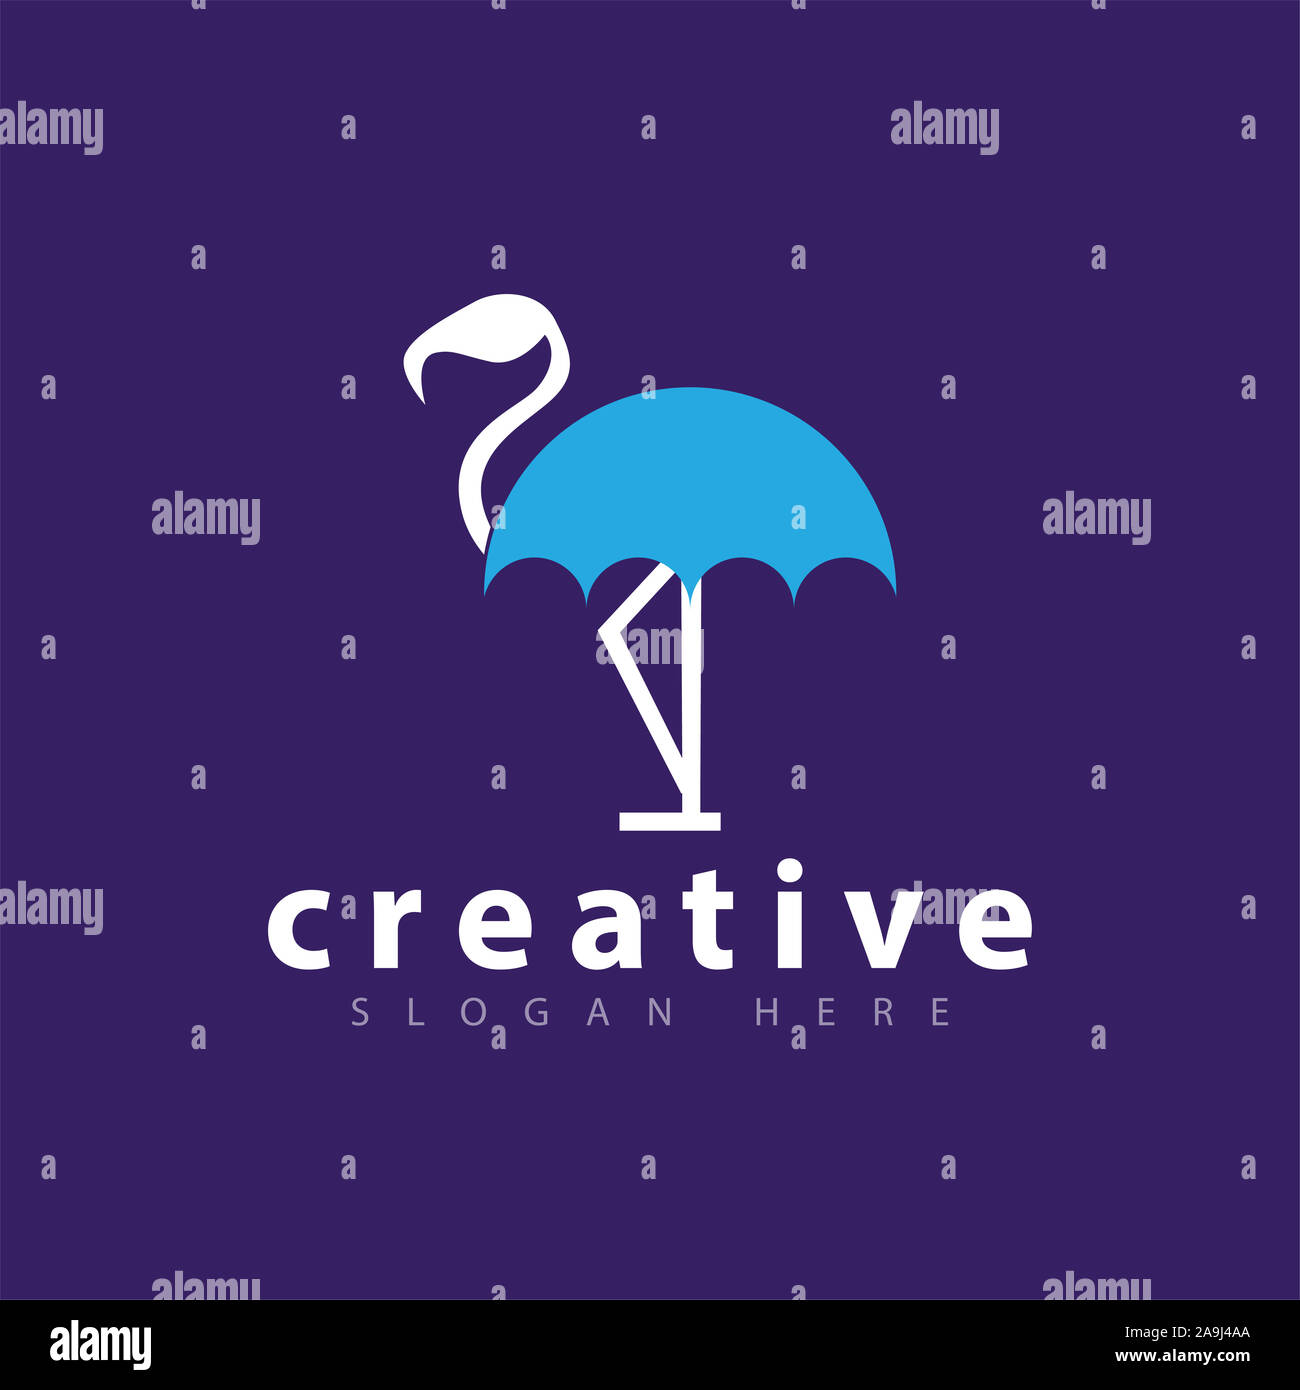 Flamingo Umbrella logo vector template Stock Photo